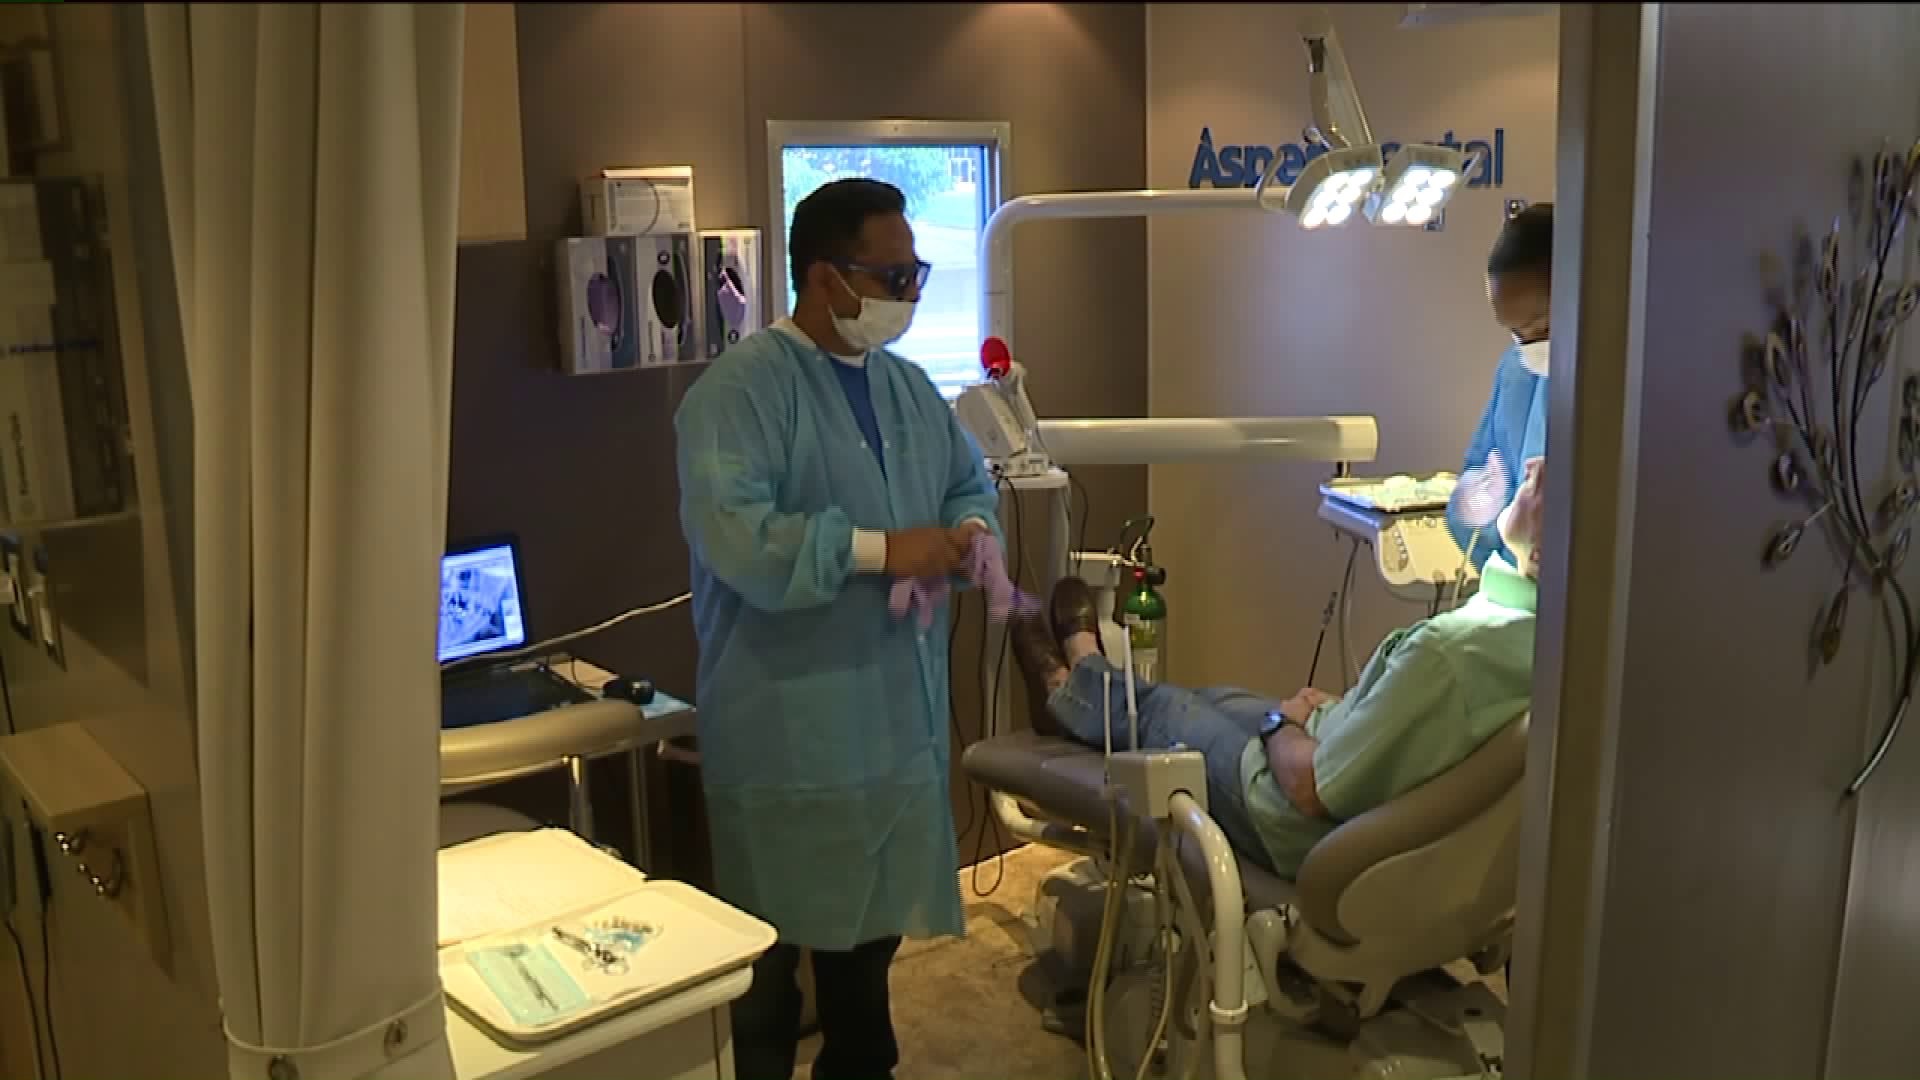 Aspen Dental Offers Free Checkups for Veterans